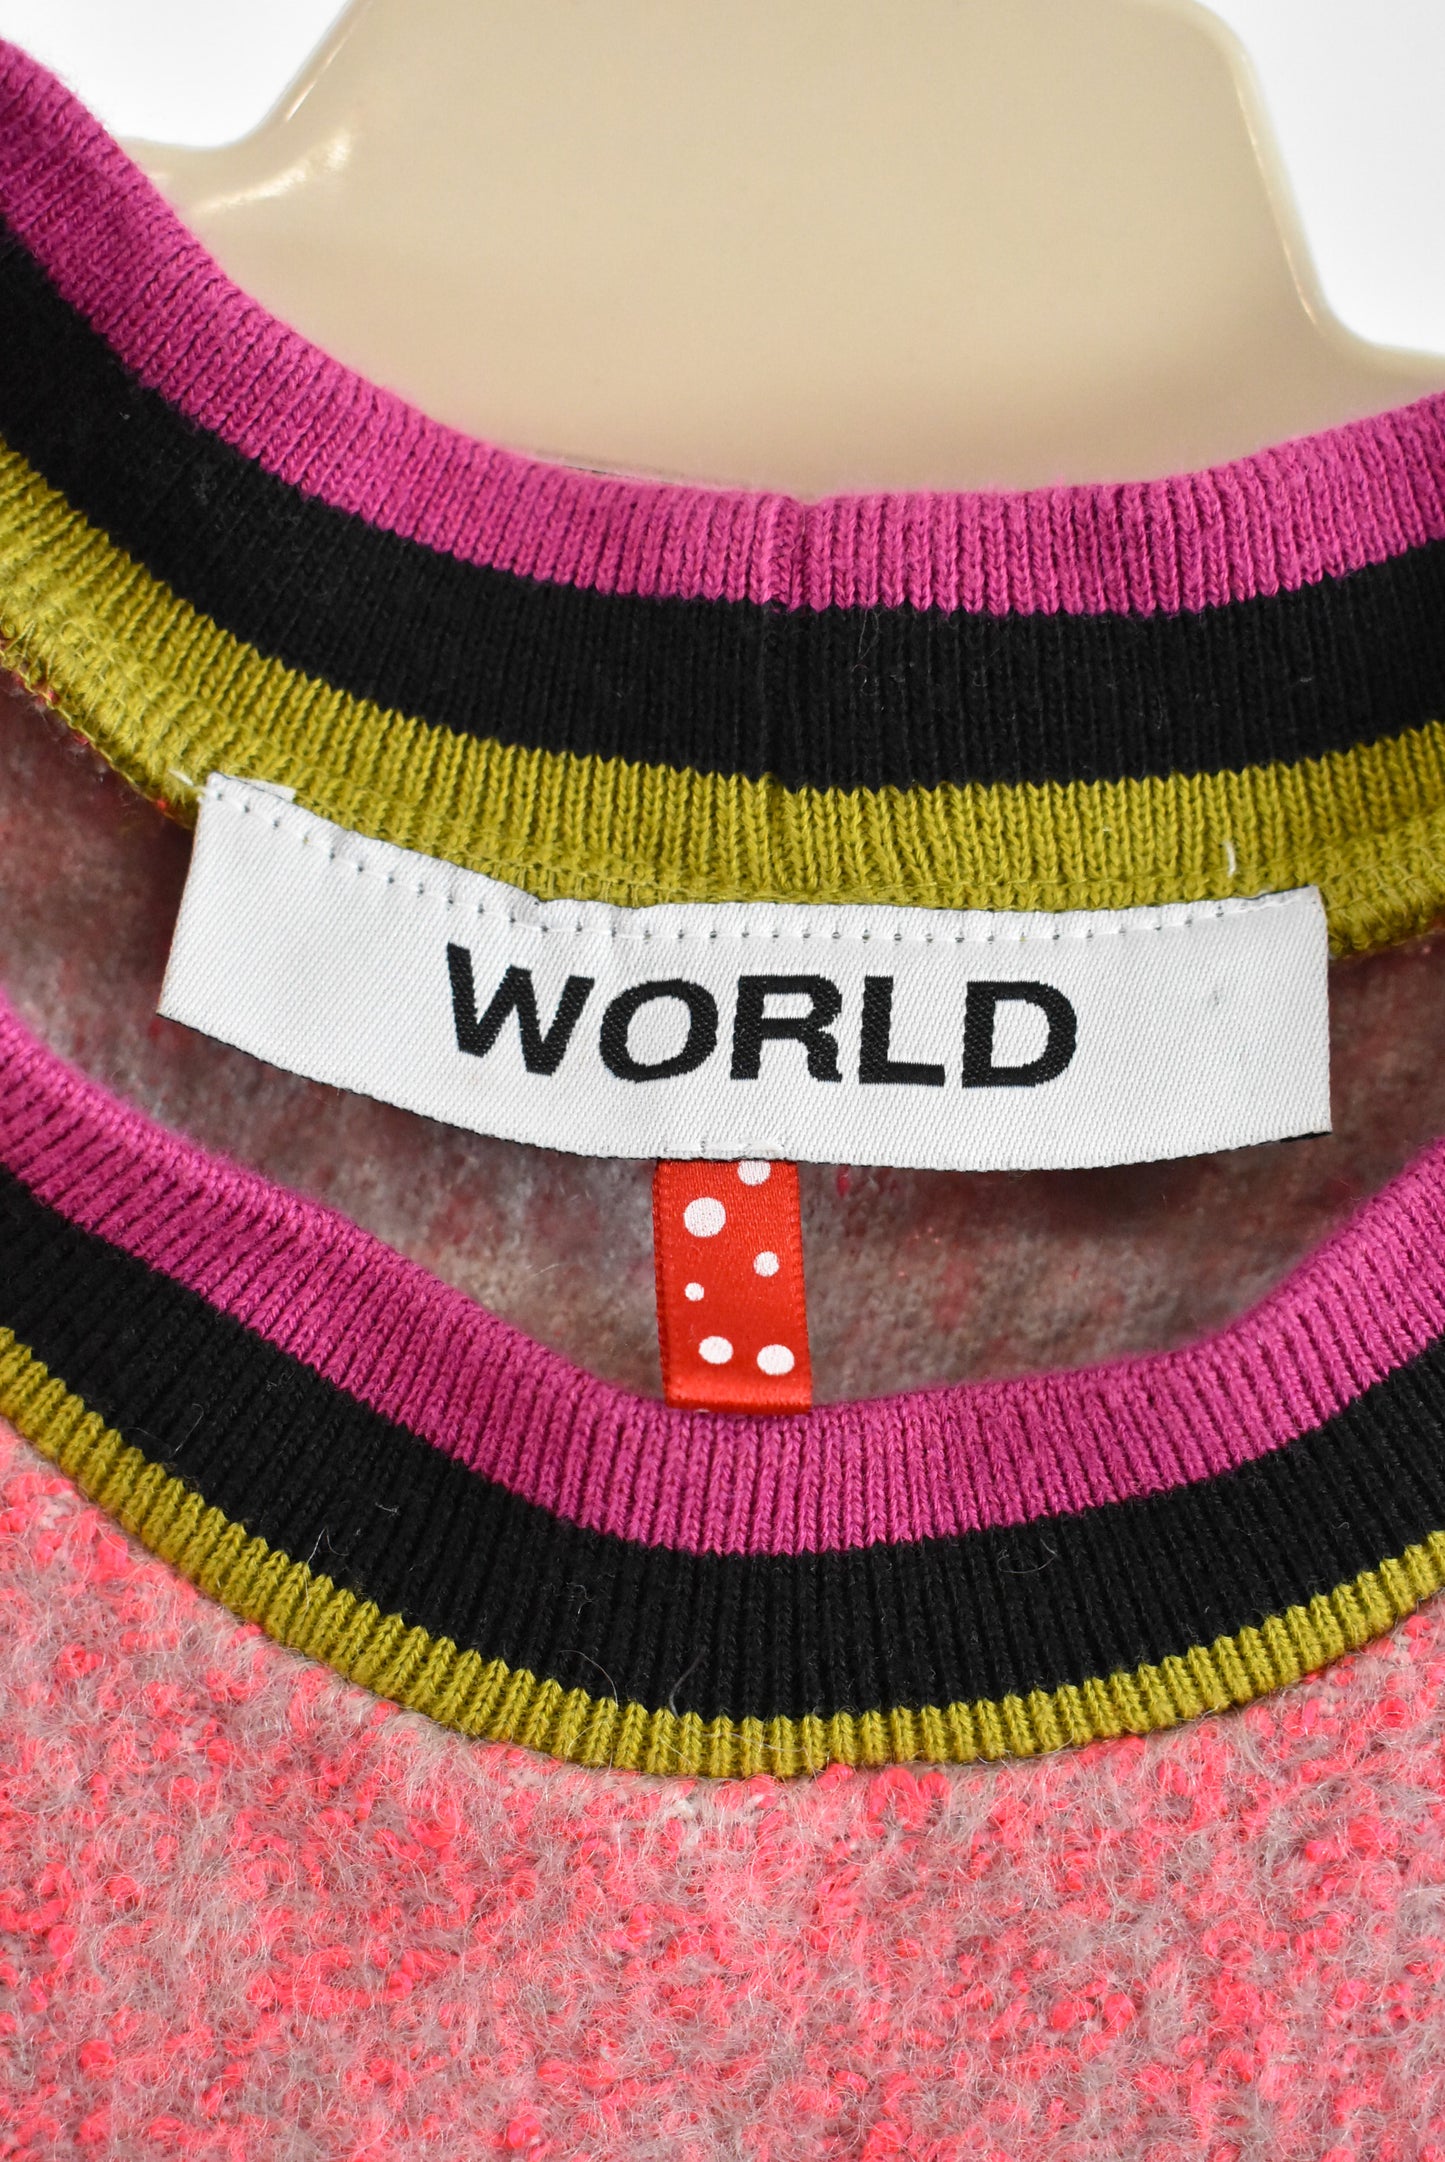 World NZ designed wool & cotton jersey, XXS